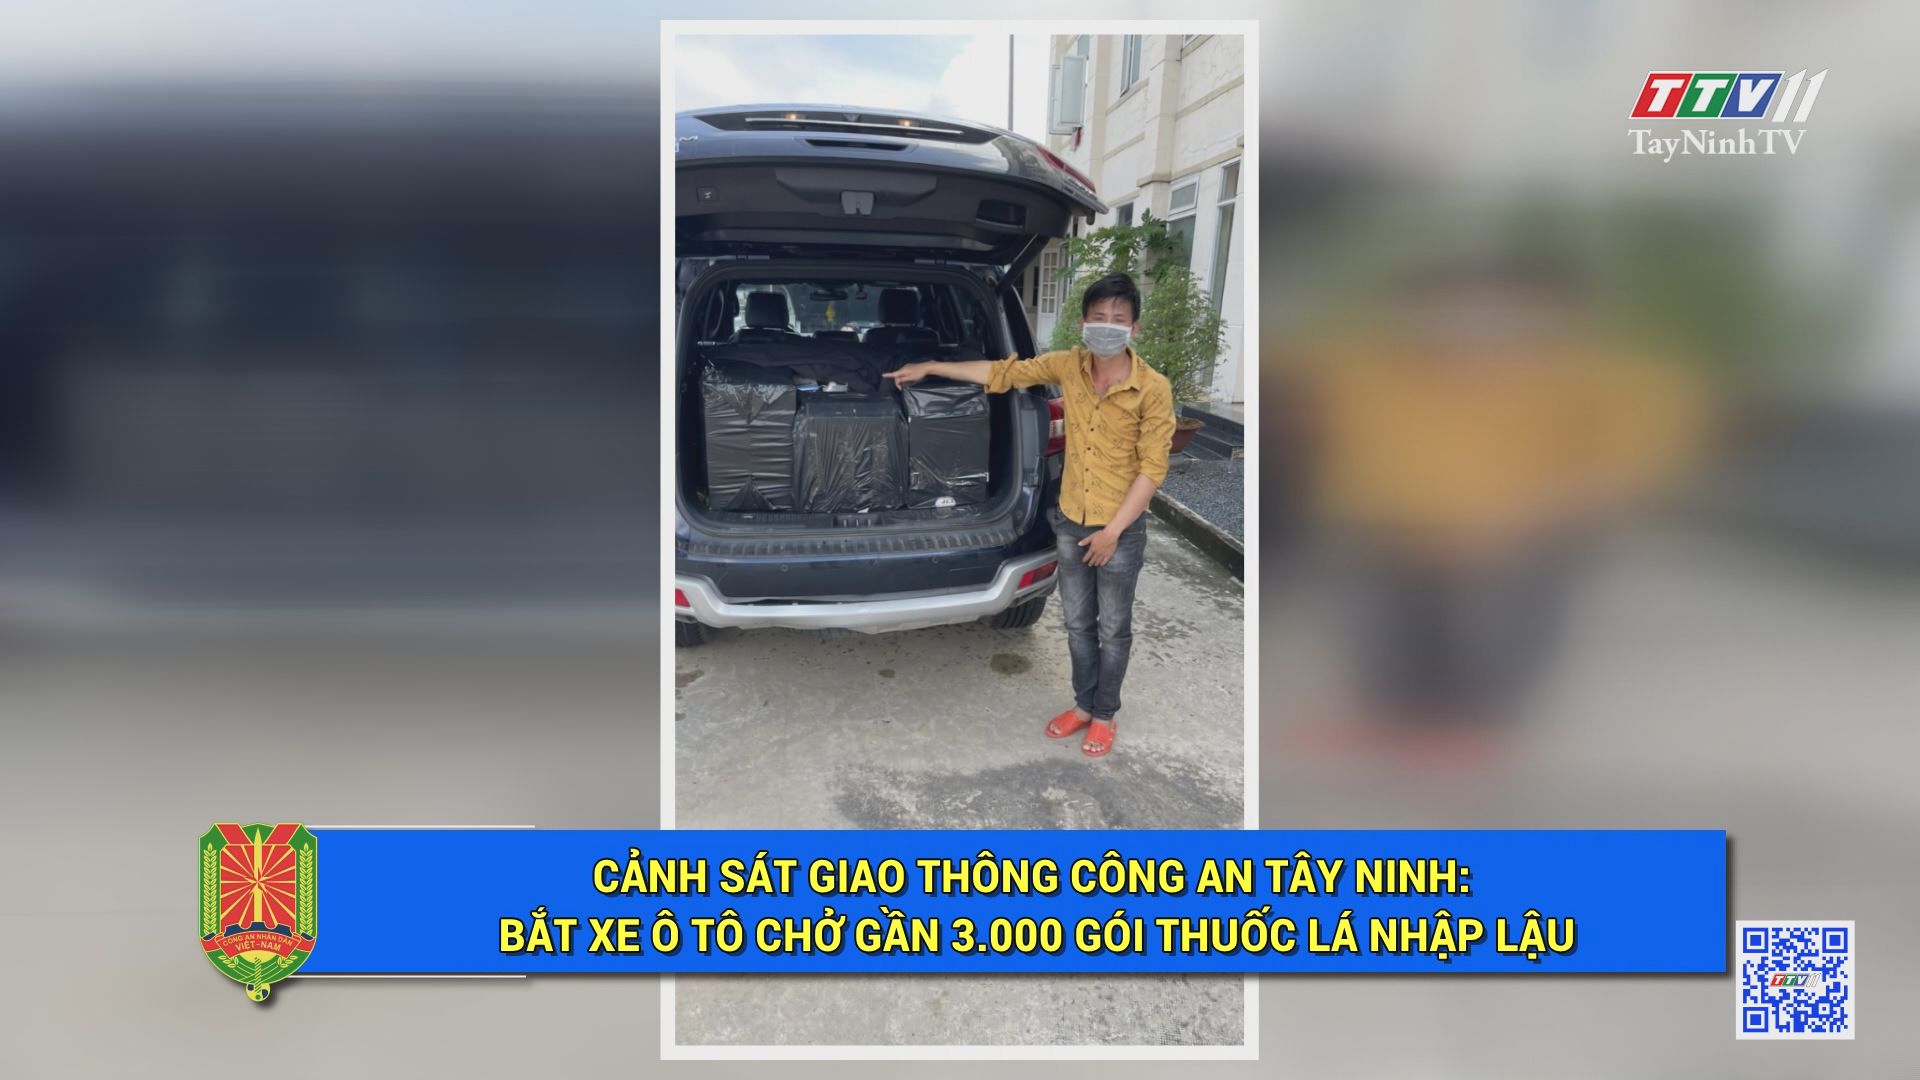 Cảnh sát Giao thông Công an Tây Ninh: bắ.t xe ô tô chở gần 3000 gói thuốc lá nhậ.p l.ậu | AN NINH TÂY NINH | TayNinhTV